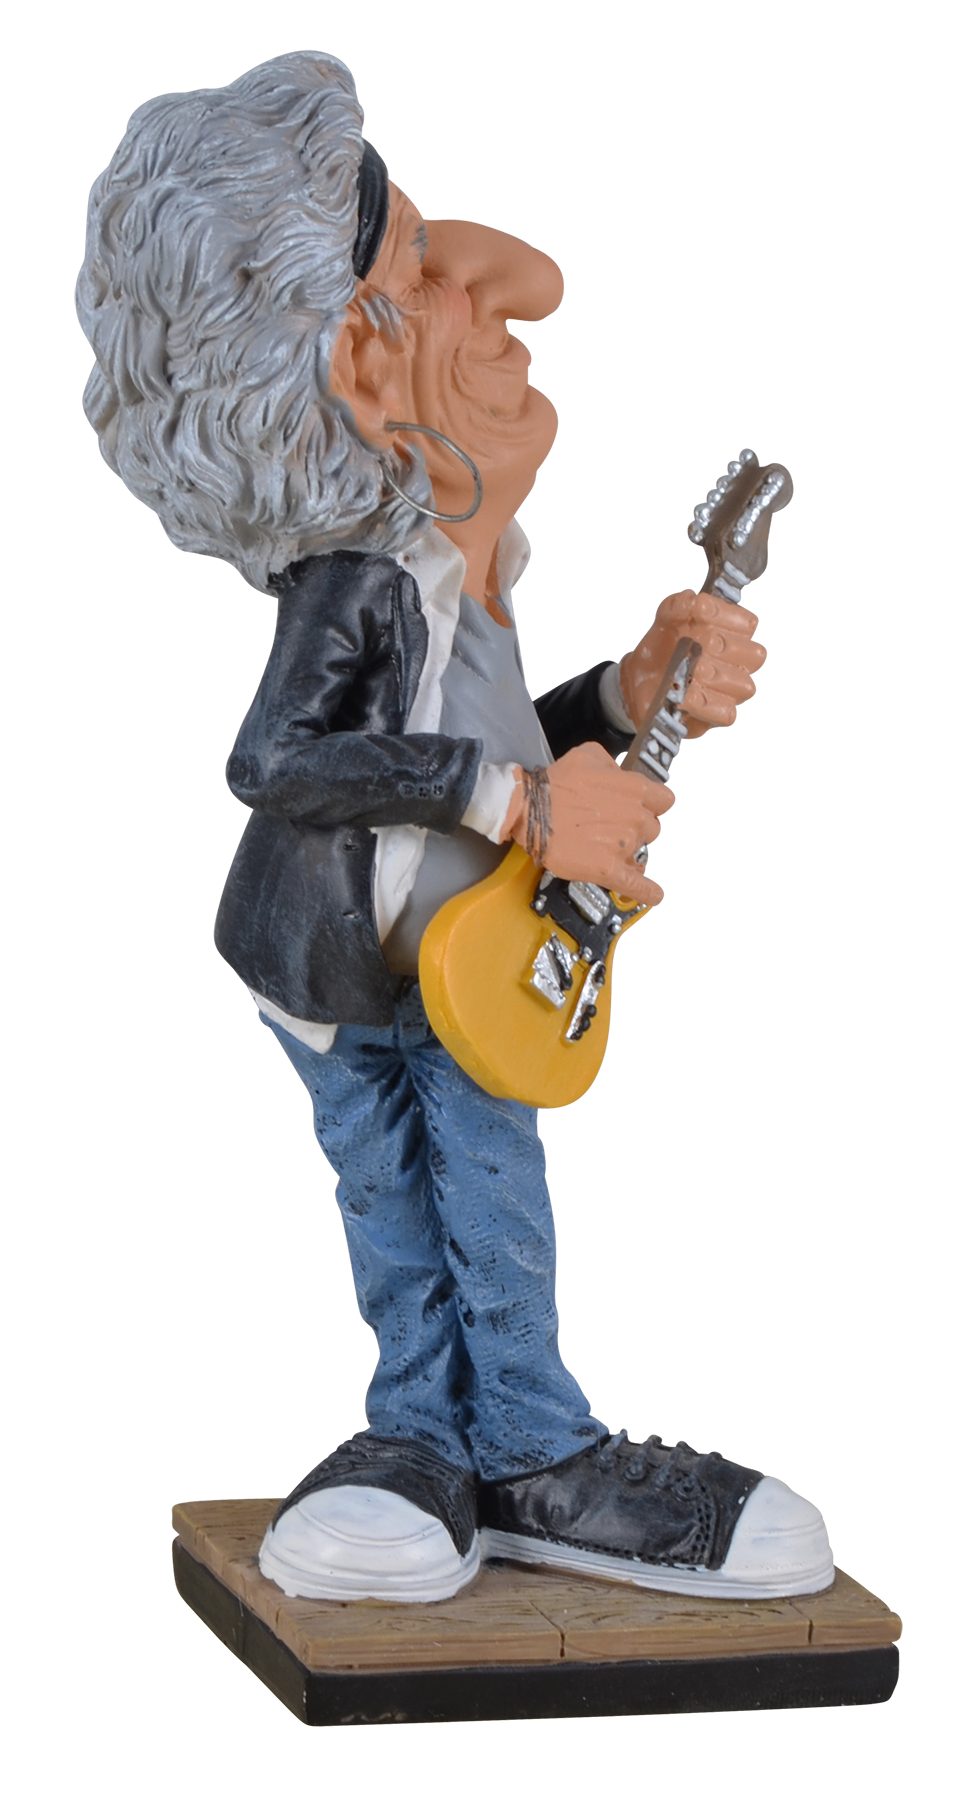 Vogler direct Gmbh Funny aus coloriert, der 8x6x17cm Life-Rockstar der von Rockband berühmtesten Hand von Kunststein, Welt, Dekofigur Keith ca. LxBxH